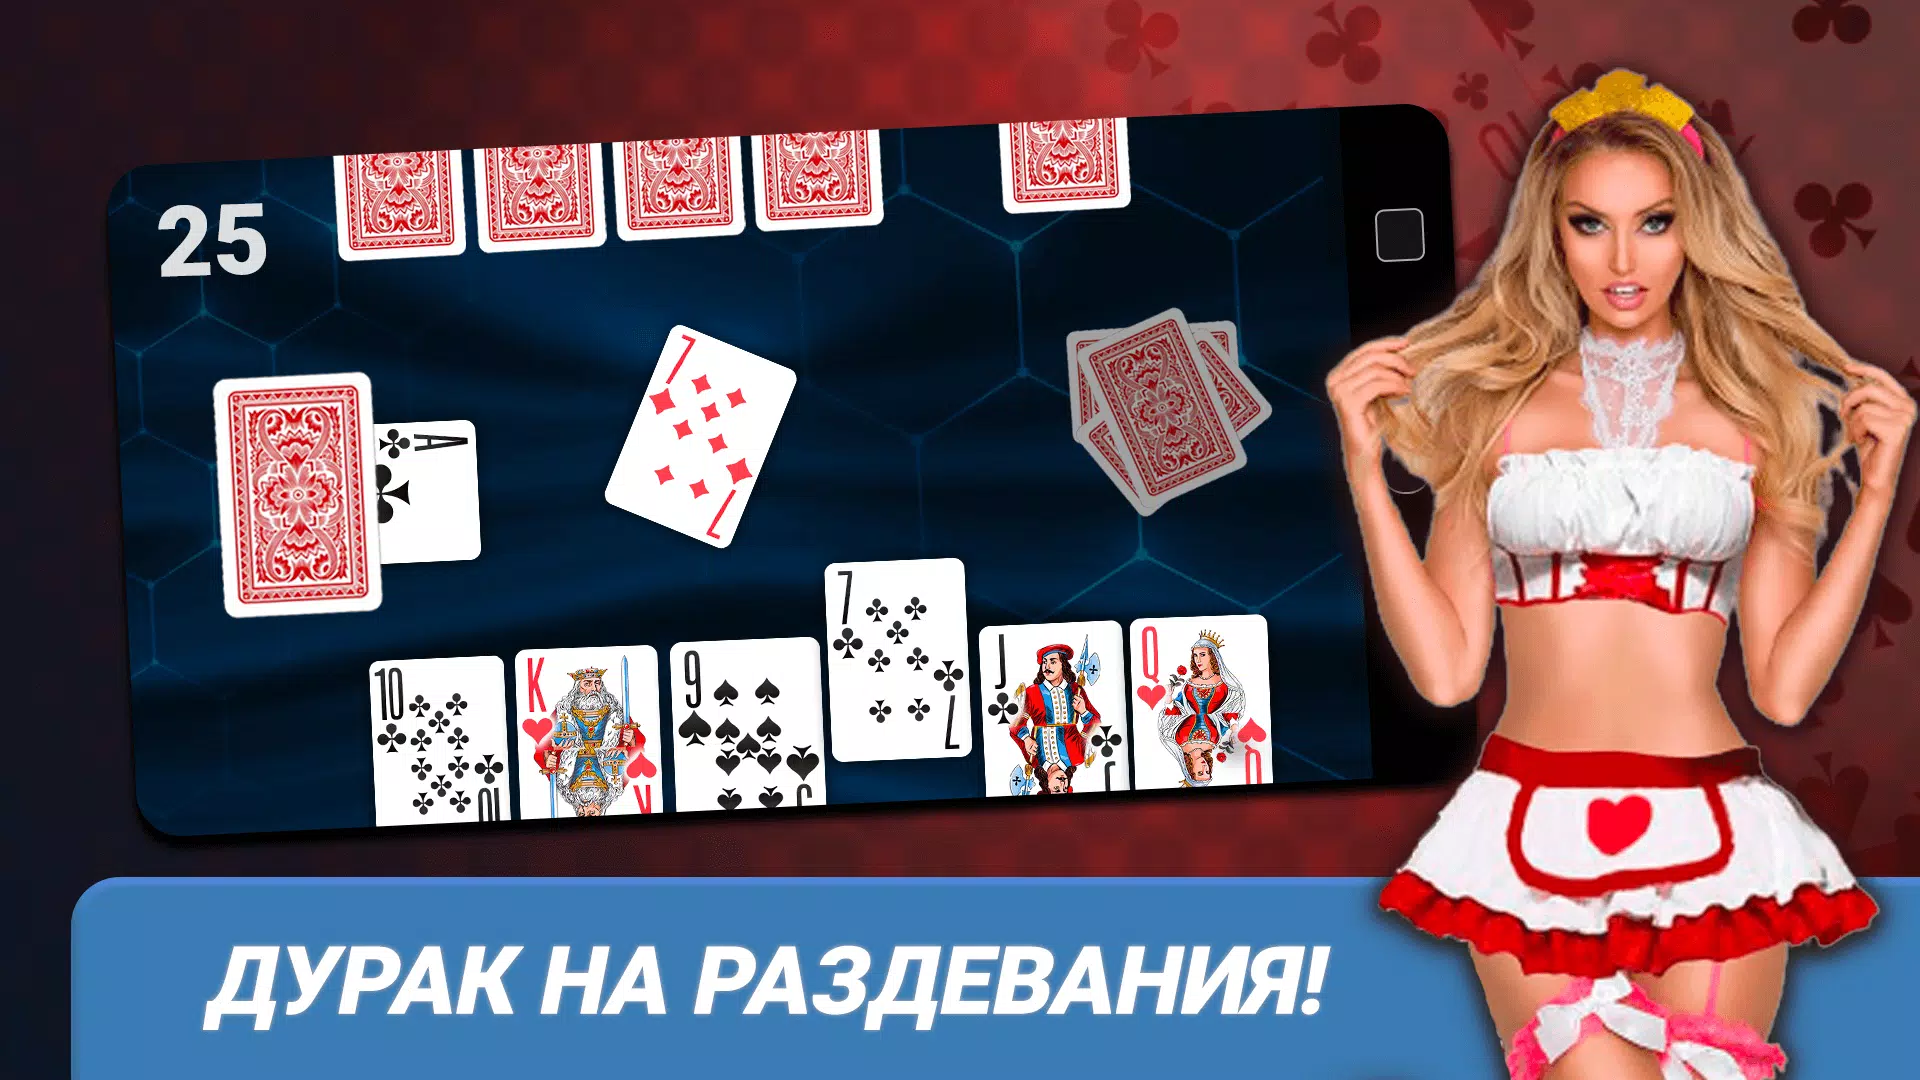 Карты играть на раздевания до конца скачать не онлайн покер не для игры онлайн